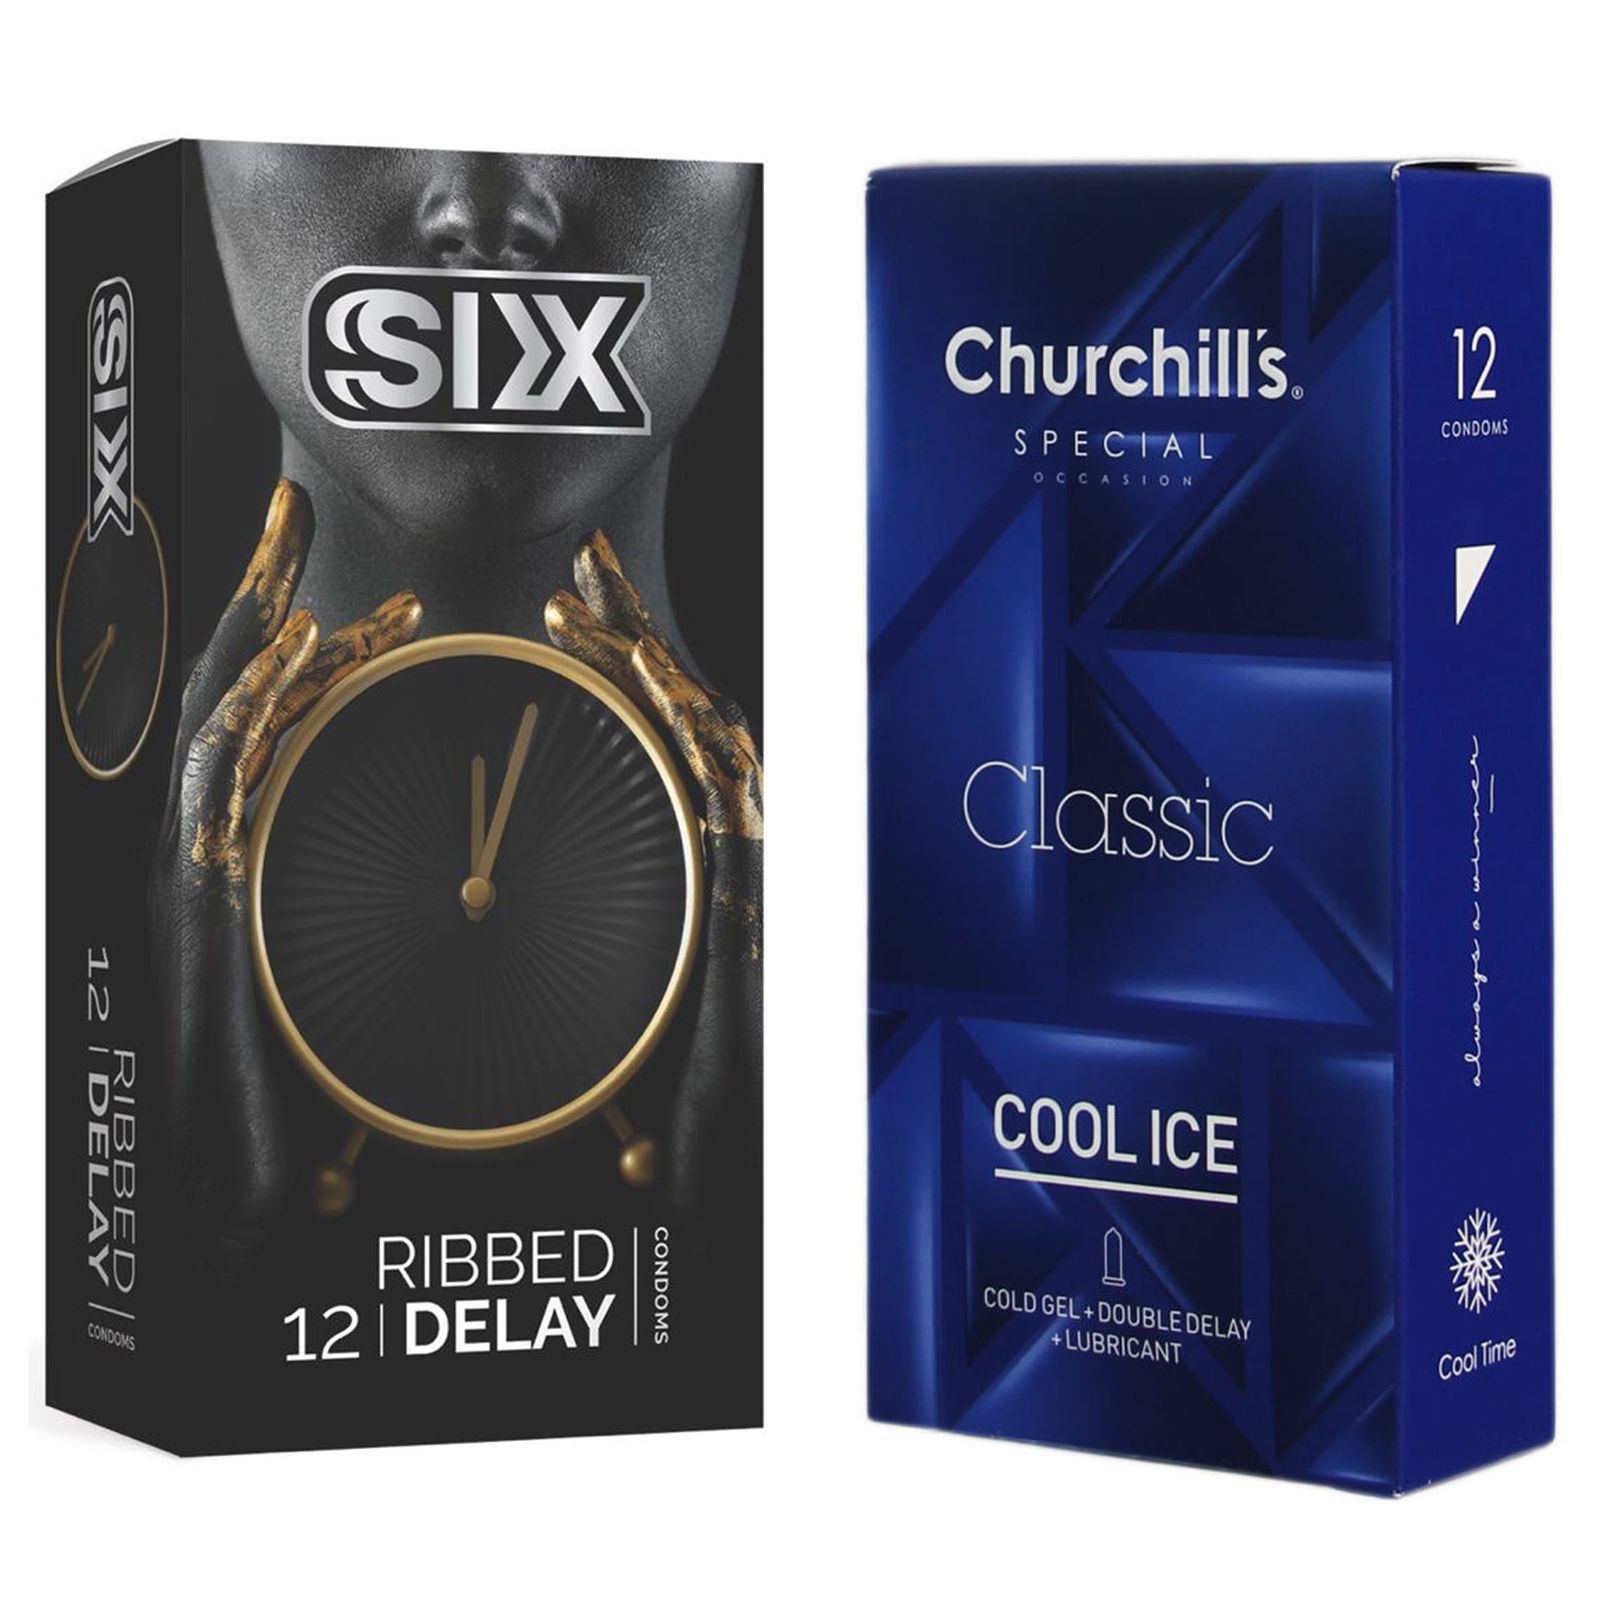 کاندوم چرچیلز مدل Cool Ice بسته 12 عددی به همراه کاندوم سیکس مدل تاخیری شیاردار بسته 12 عددی  -  - 1